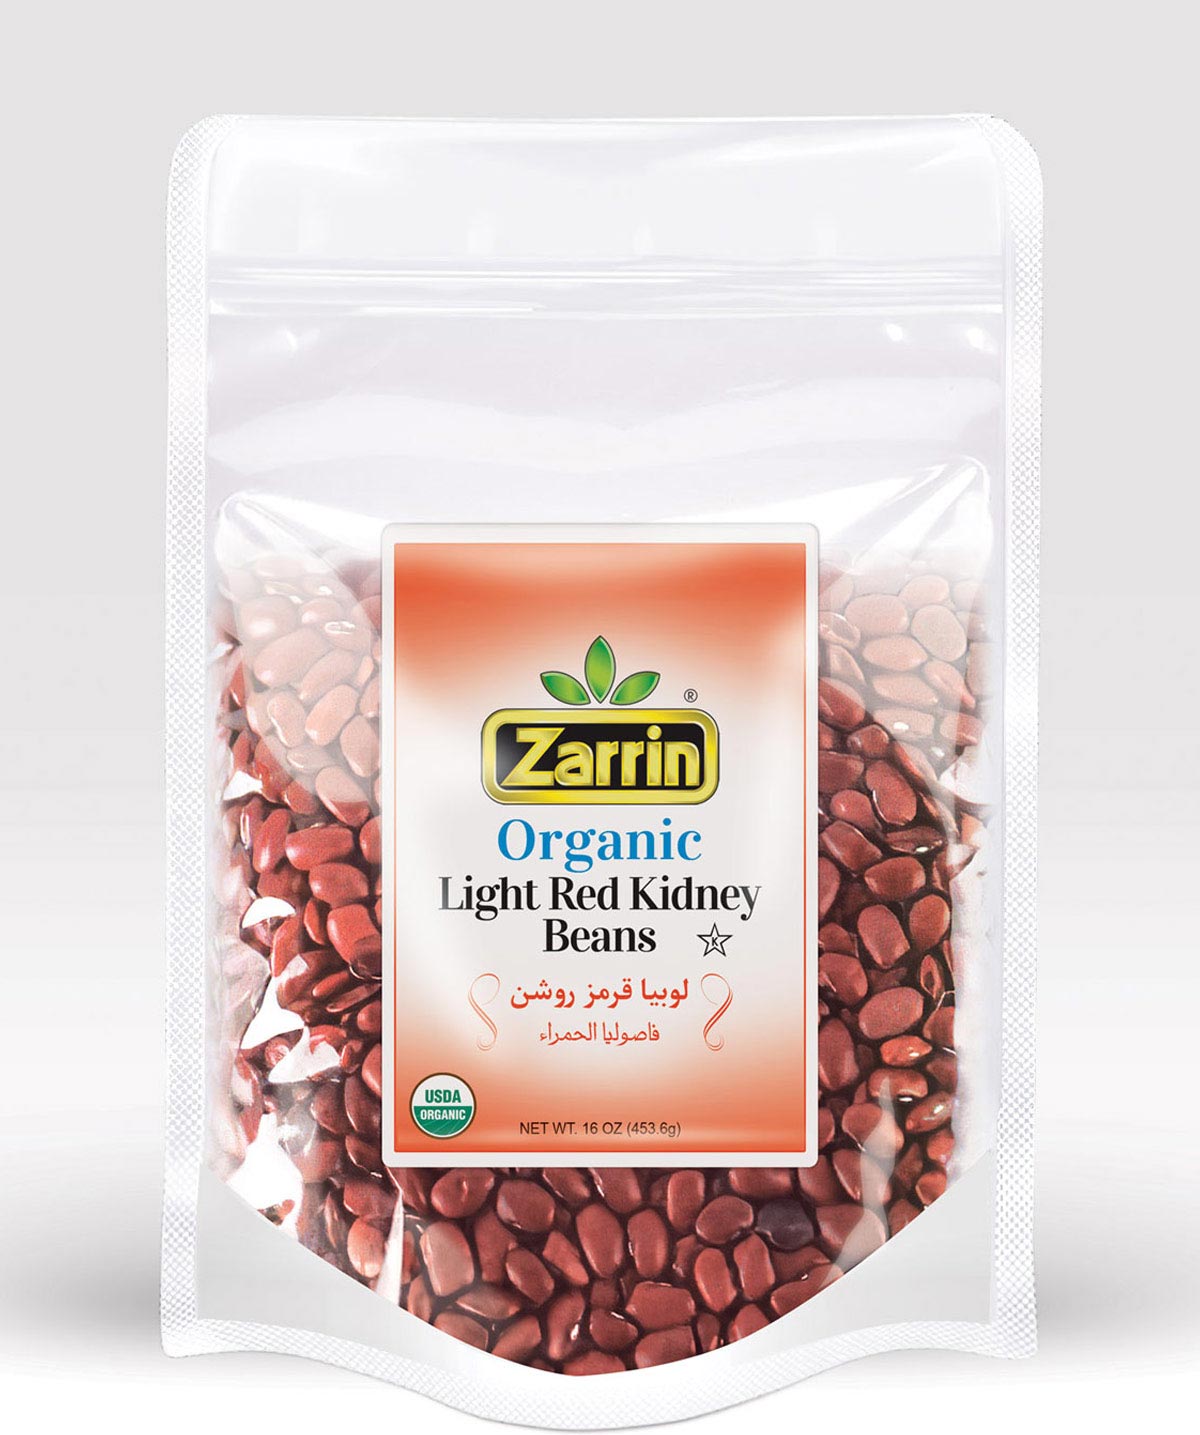 Zarrin Organic Light Red Kidney Beans